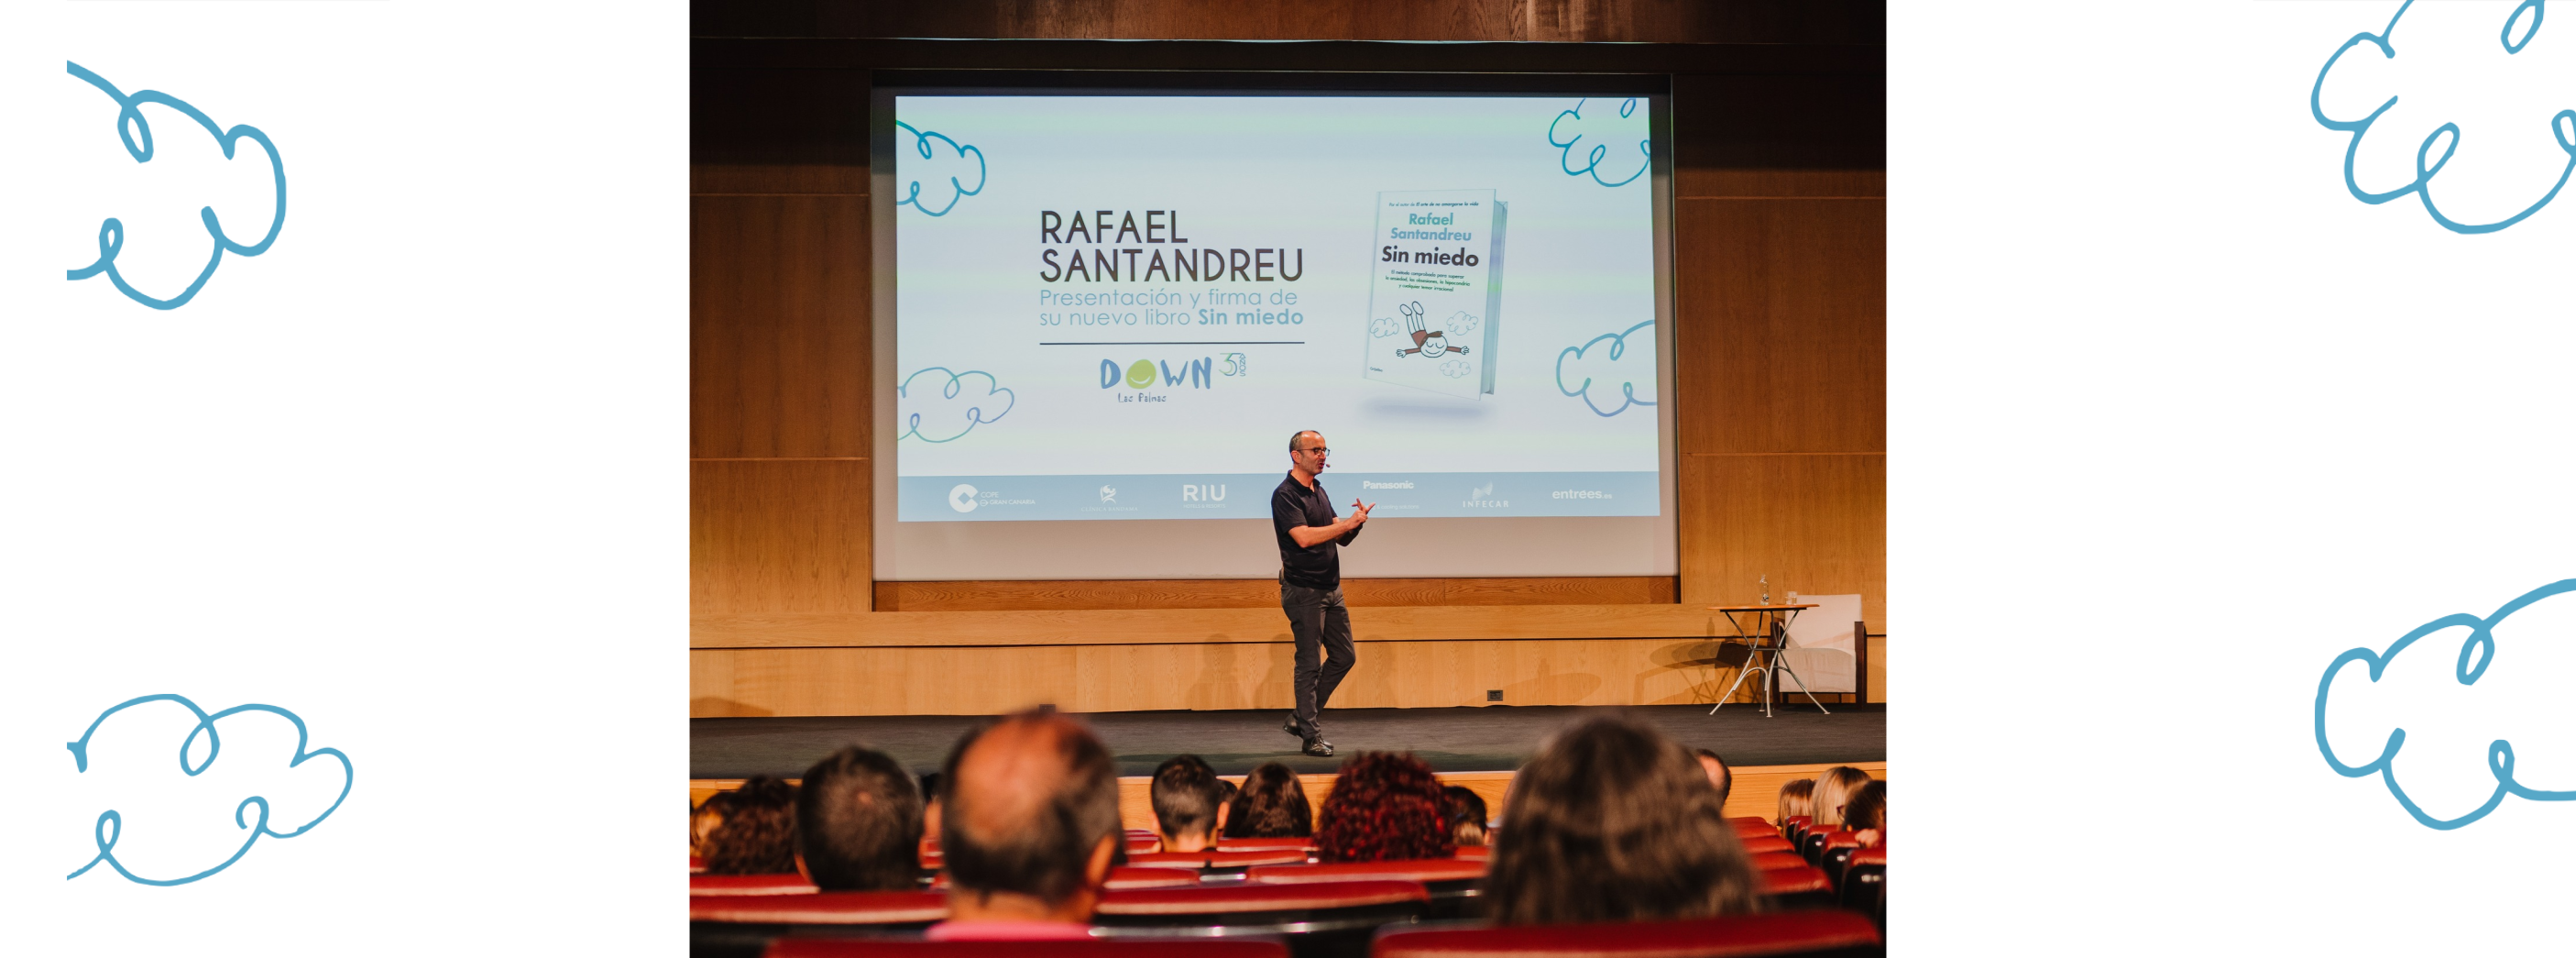 Rafael Santandreu presentando su nuevo libro "Sin Miedo" sobre el escenario